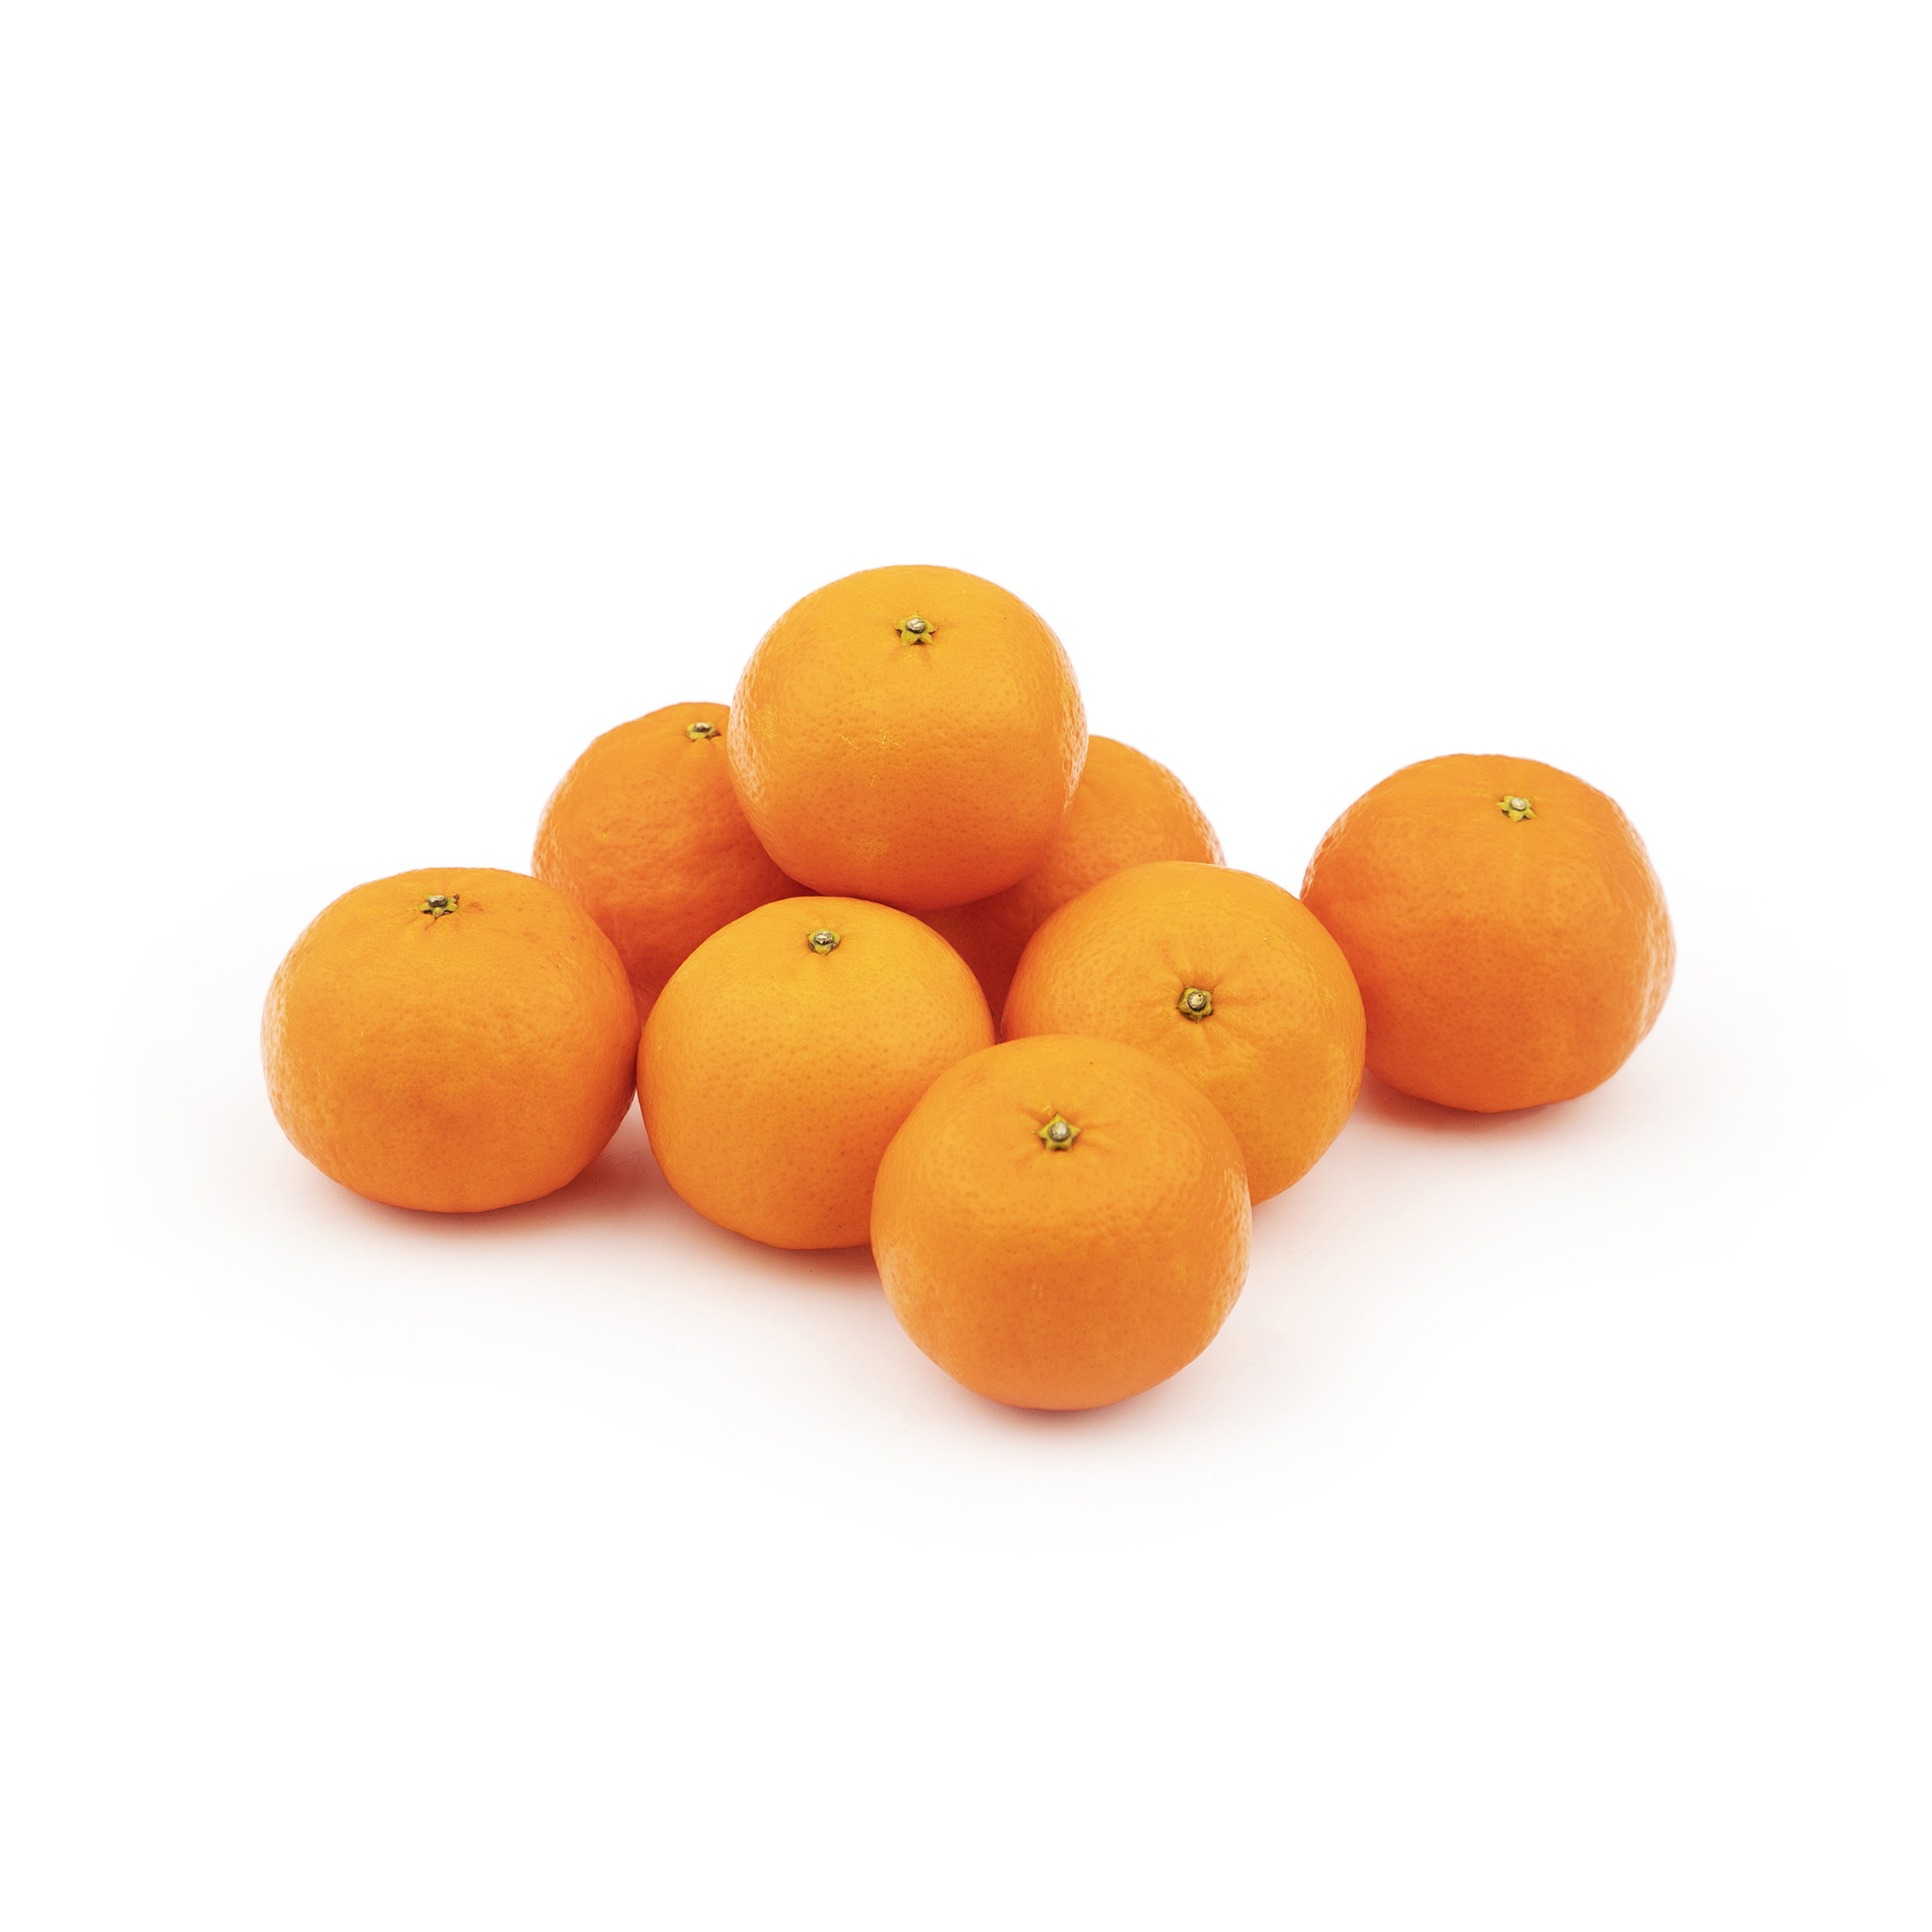 نارنگی پچ fresh وزن 1 کیلوگرم